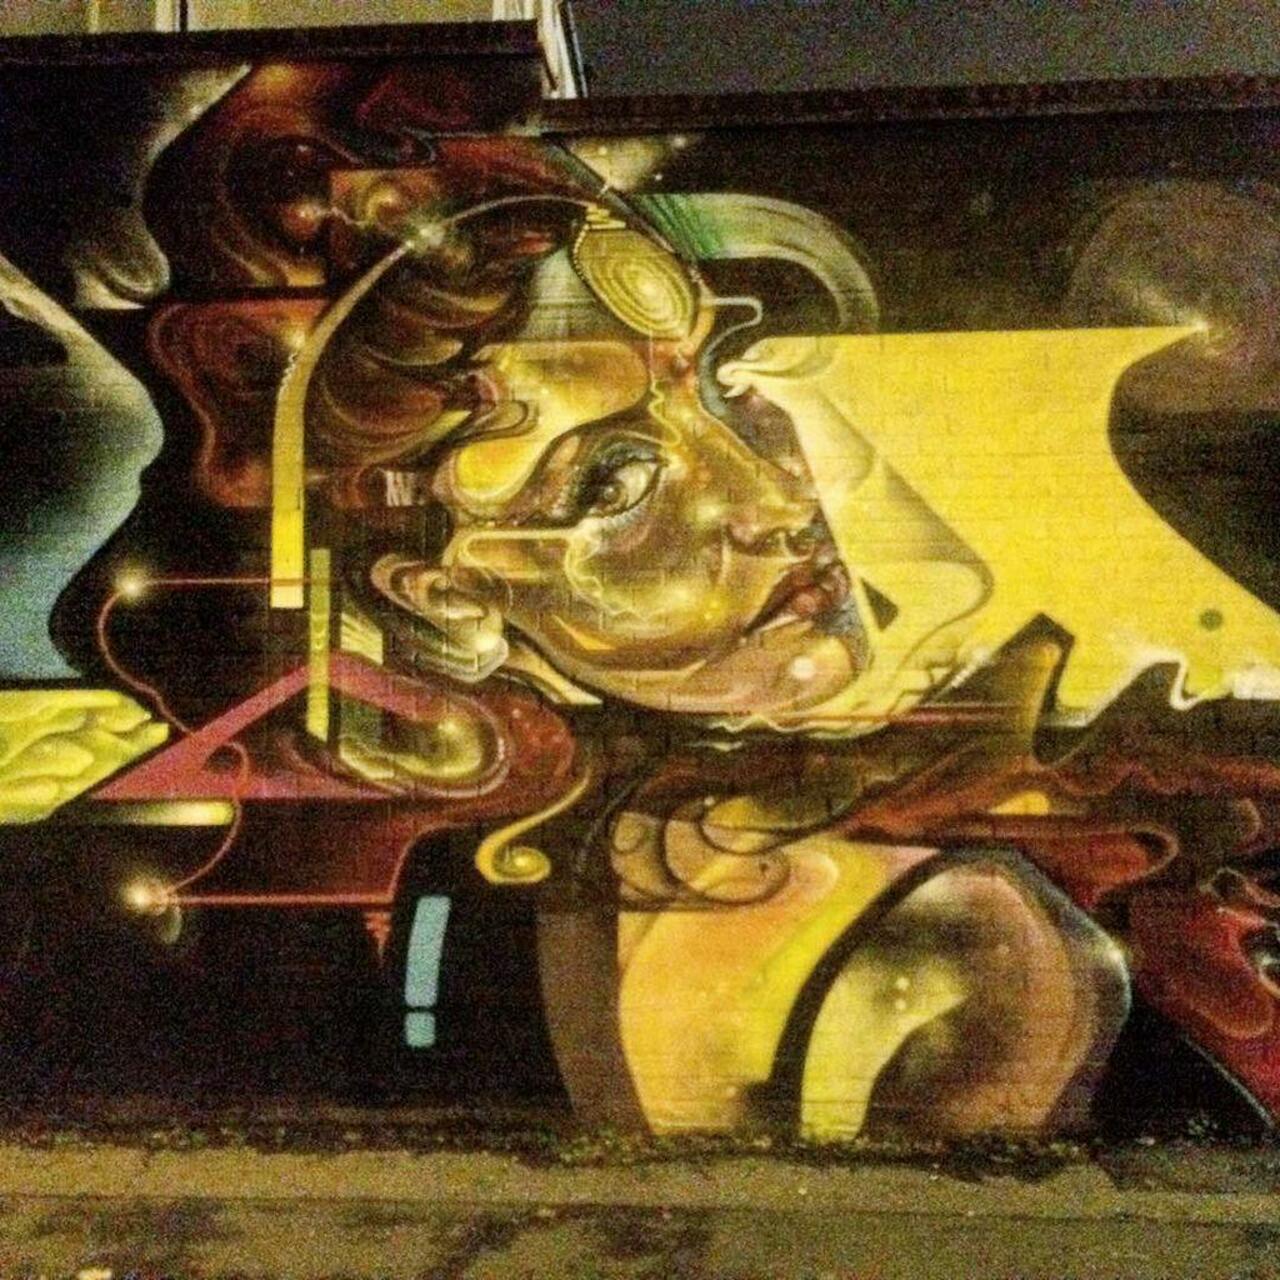 RT @12Elena27: Look at me! #brixton #brixtongraffiti #graffiti #graffitiart #street #streetart  #streetartlondon http://t.co/lN4lINAK2H